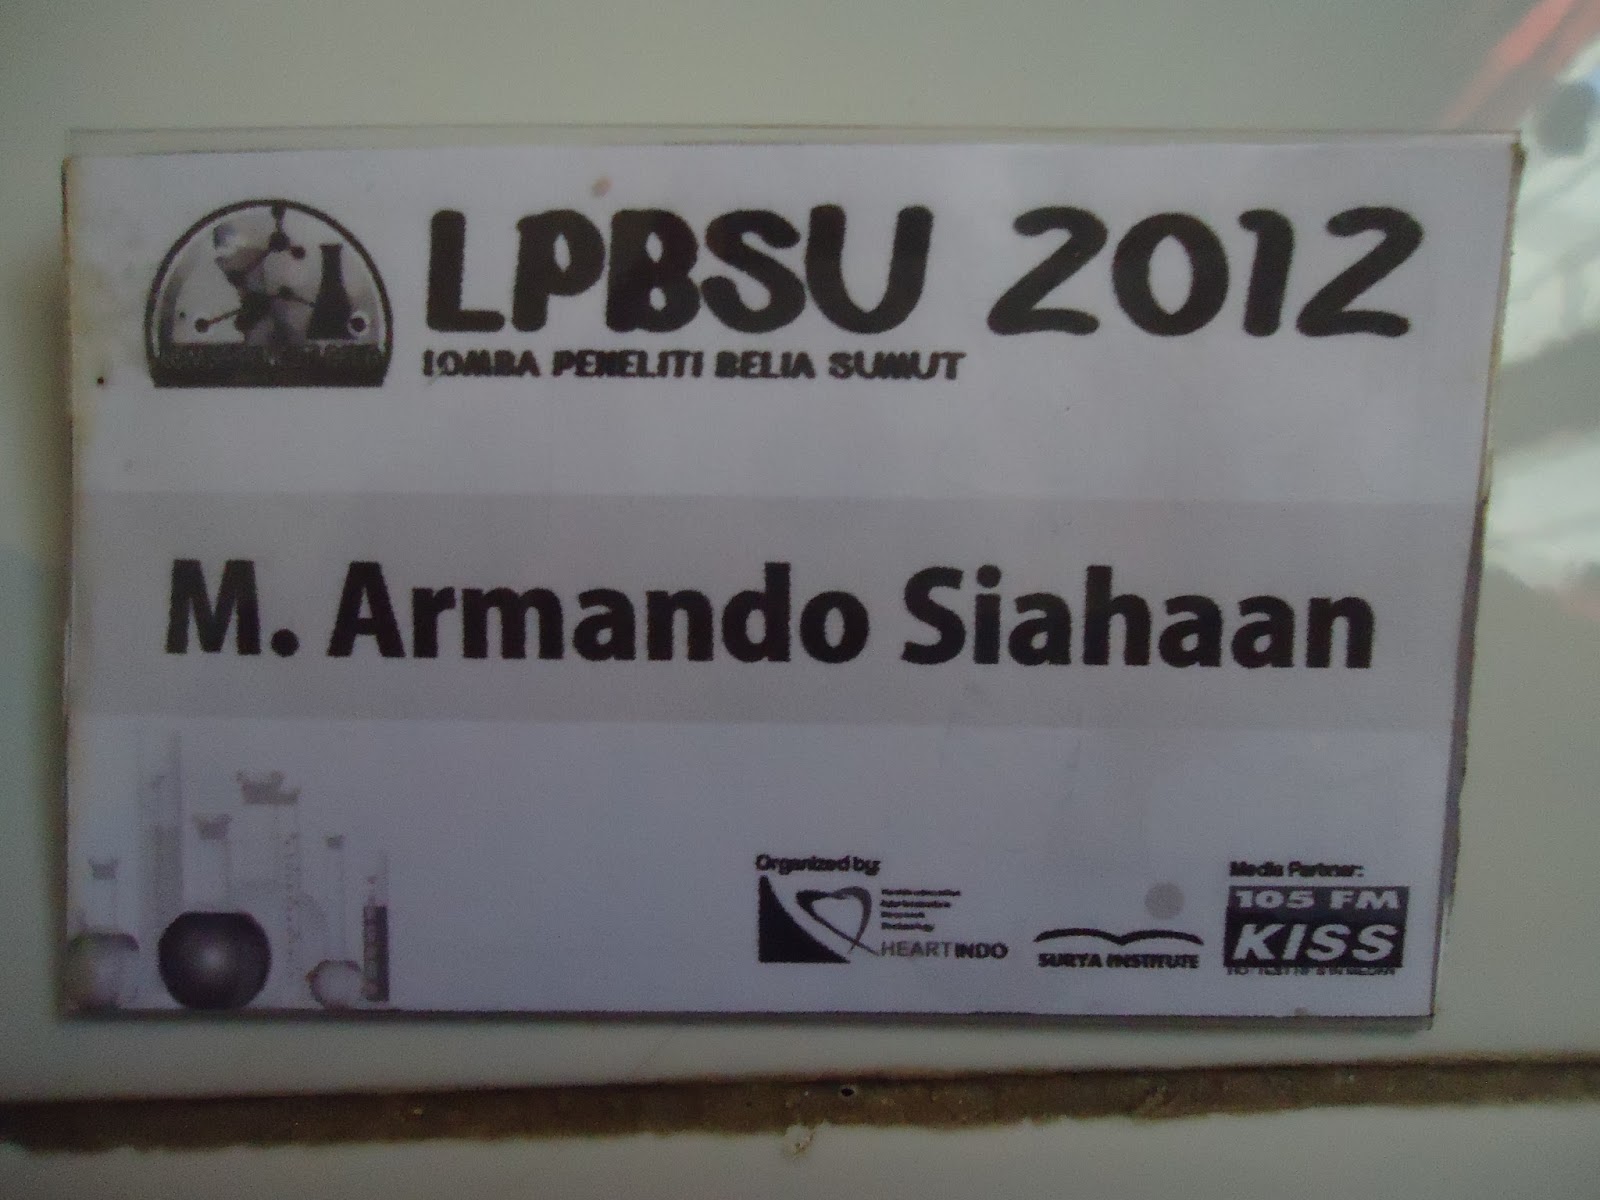 Yang ini didapat waktu ikut LPBSU Lomba Peneliti Belia Sumatera Utara Waktu itu saya setim dengan teman bernama Yanti dan Nugraha